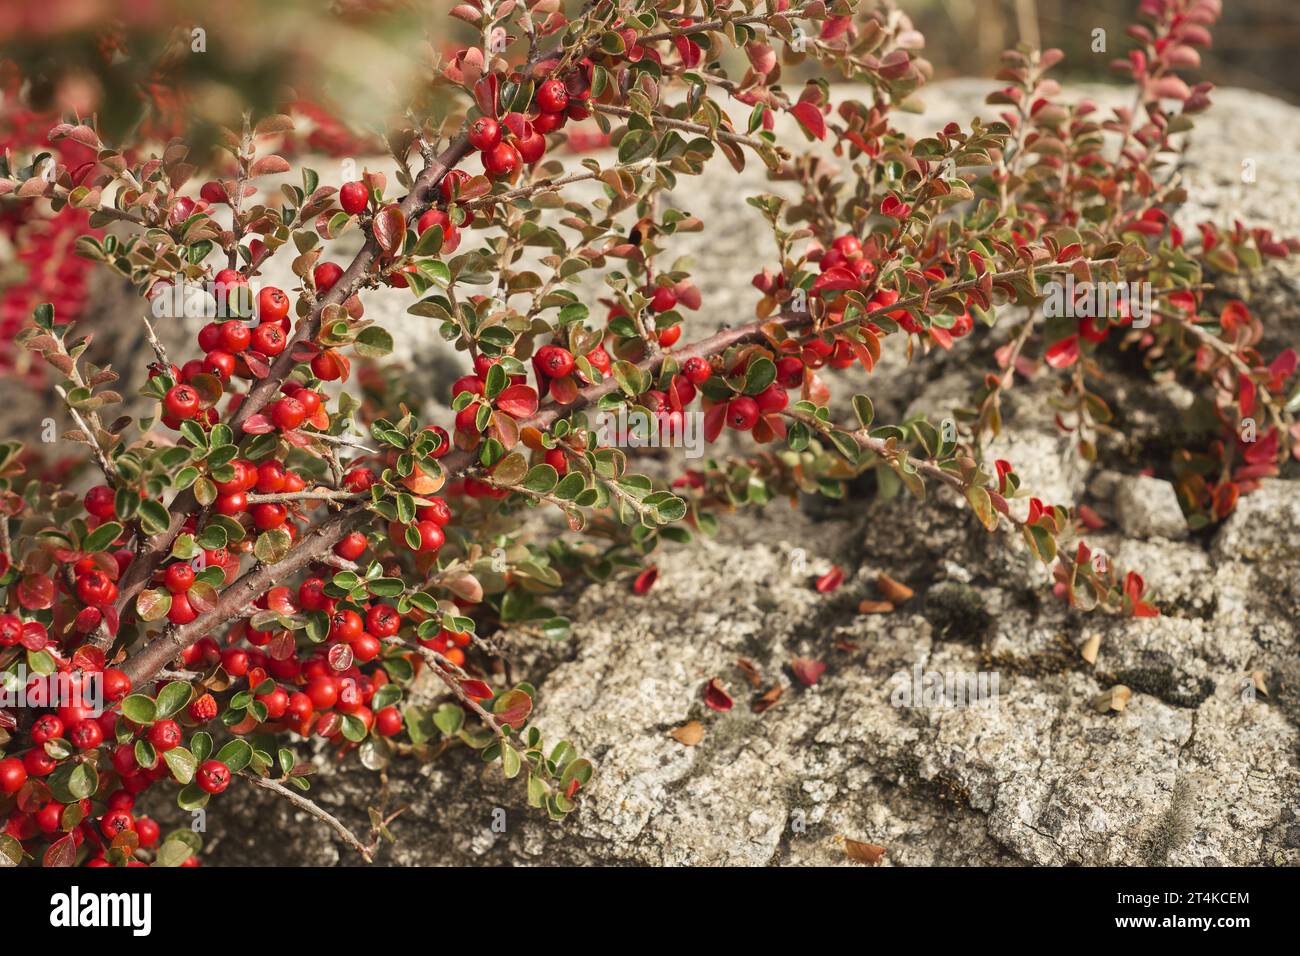 Herbstbusch mit Beeren auf dem Hintergrund eines Felsens, selektiver Fokus, Idee für Hintergrund oder Postkarte mit Herbststimmung, Bewunderung der Herbstnatur Stockfoto